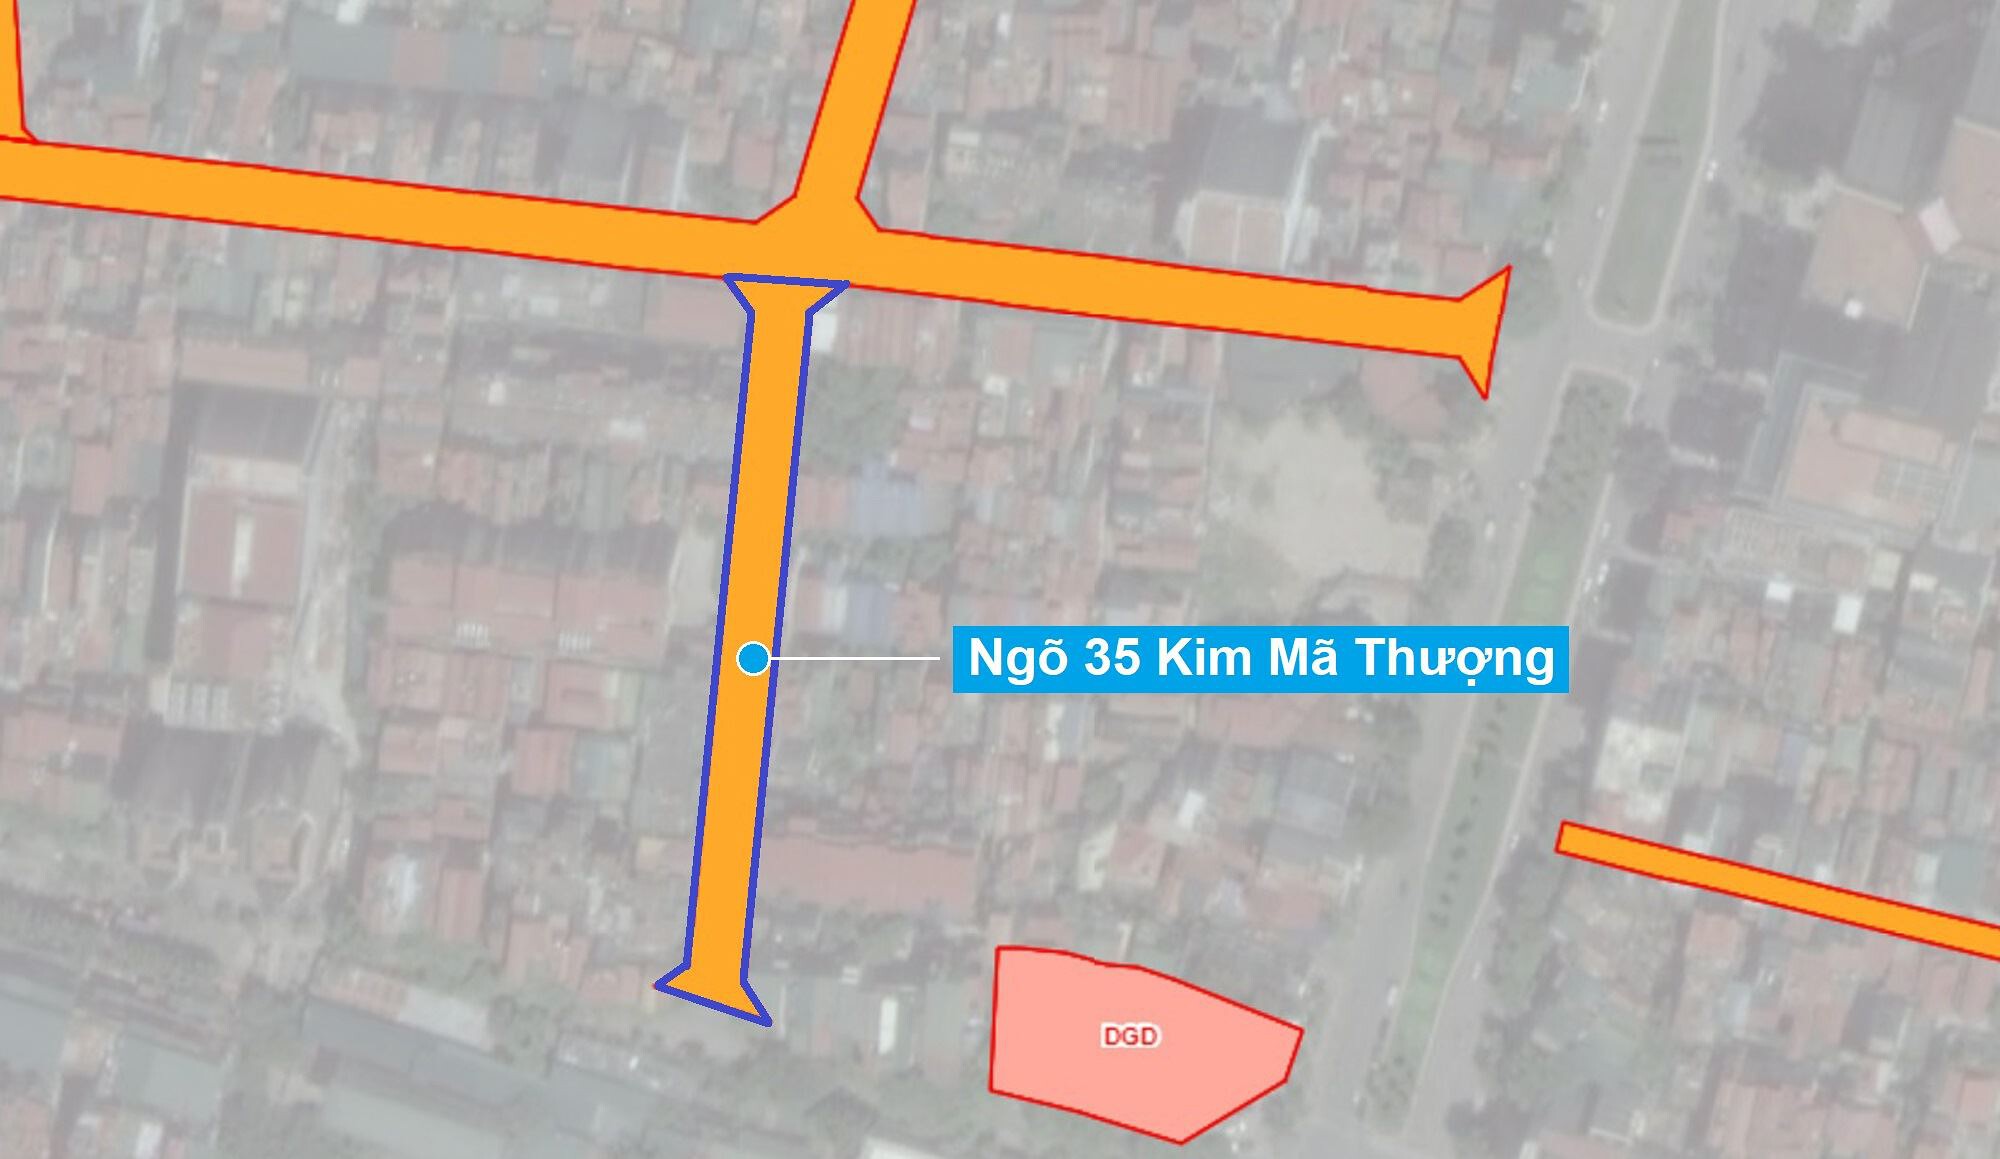 Sơ đồ khu đất sắp thu hồi mở đường ở phường Cống Vị. (Nguồn ảnh: Bản đồ sử dụng đất TP Hà Nội năm 2020)